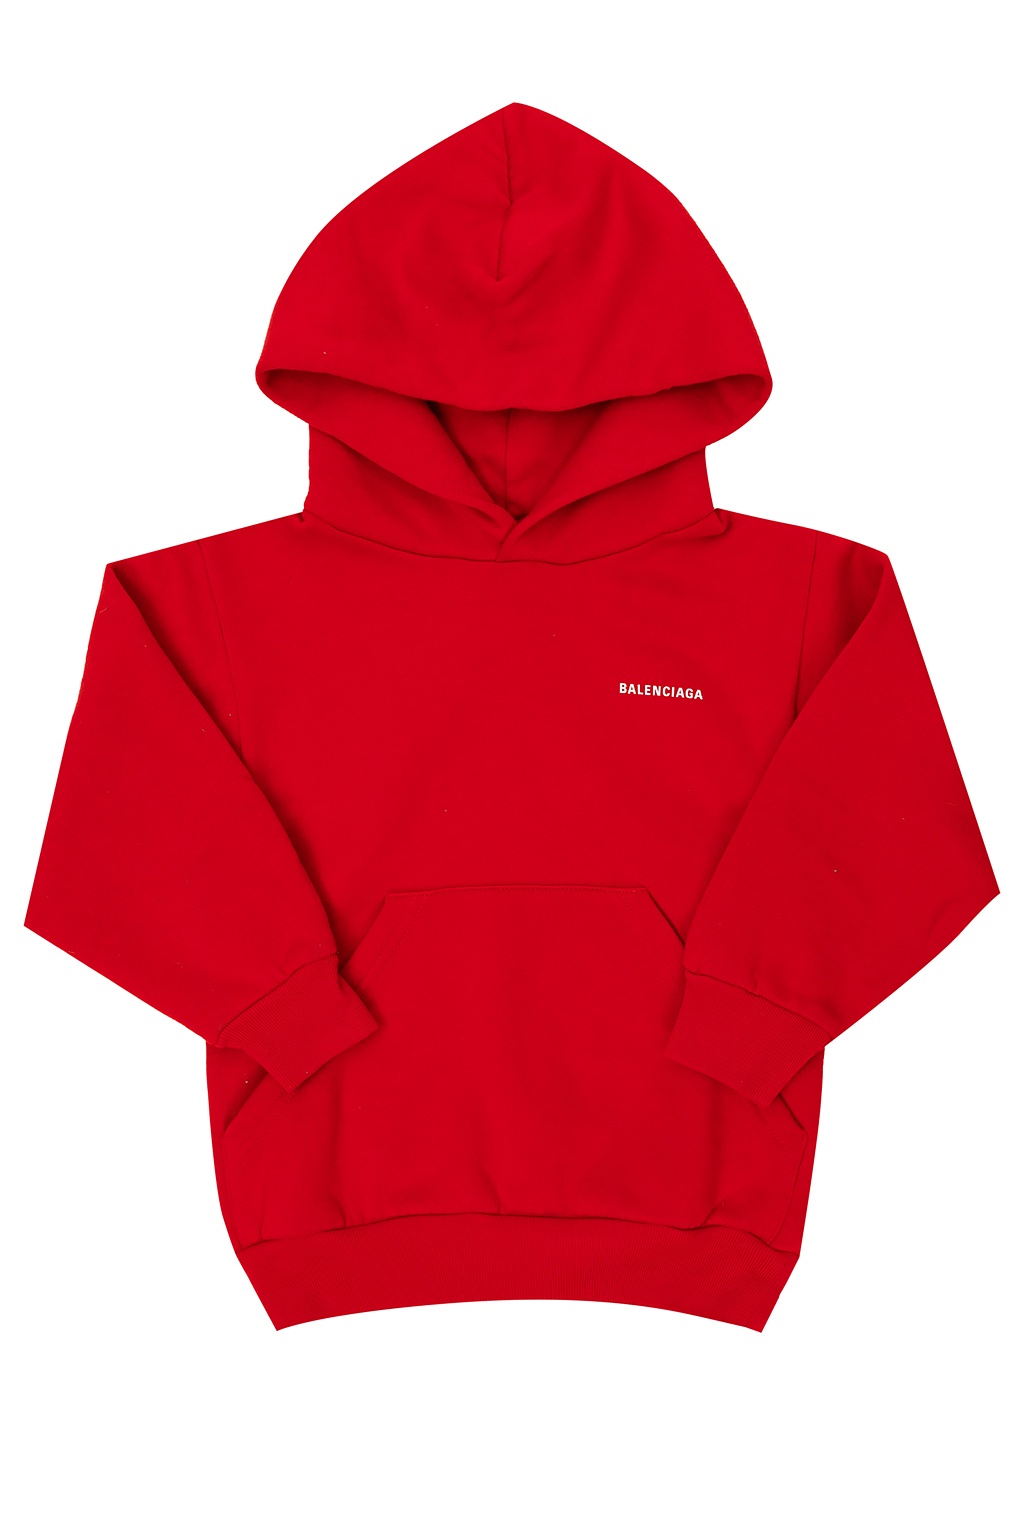 balenciaga red hoodie